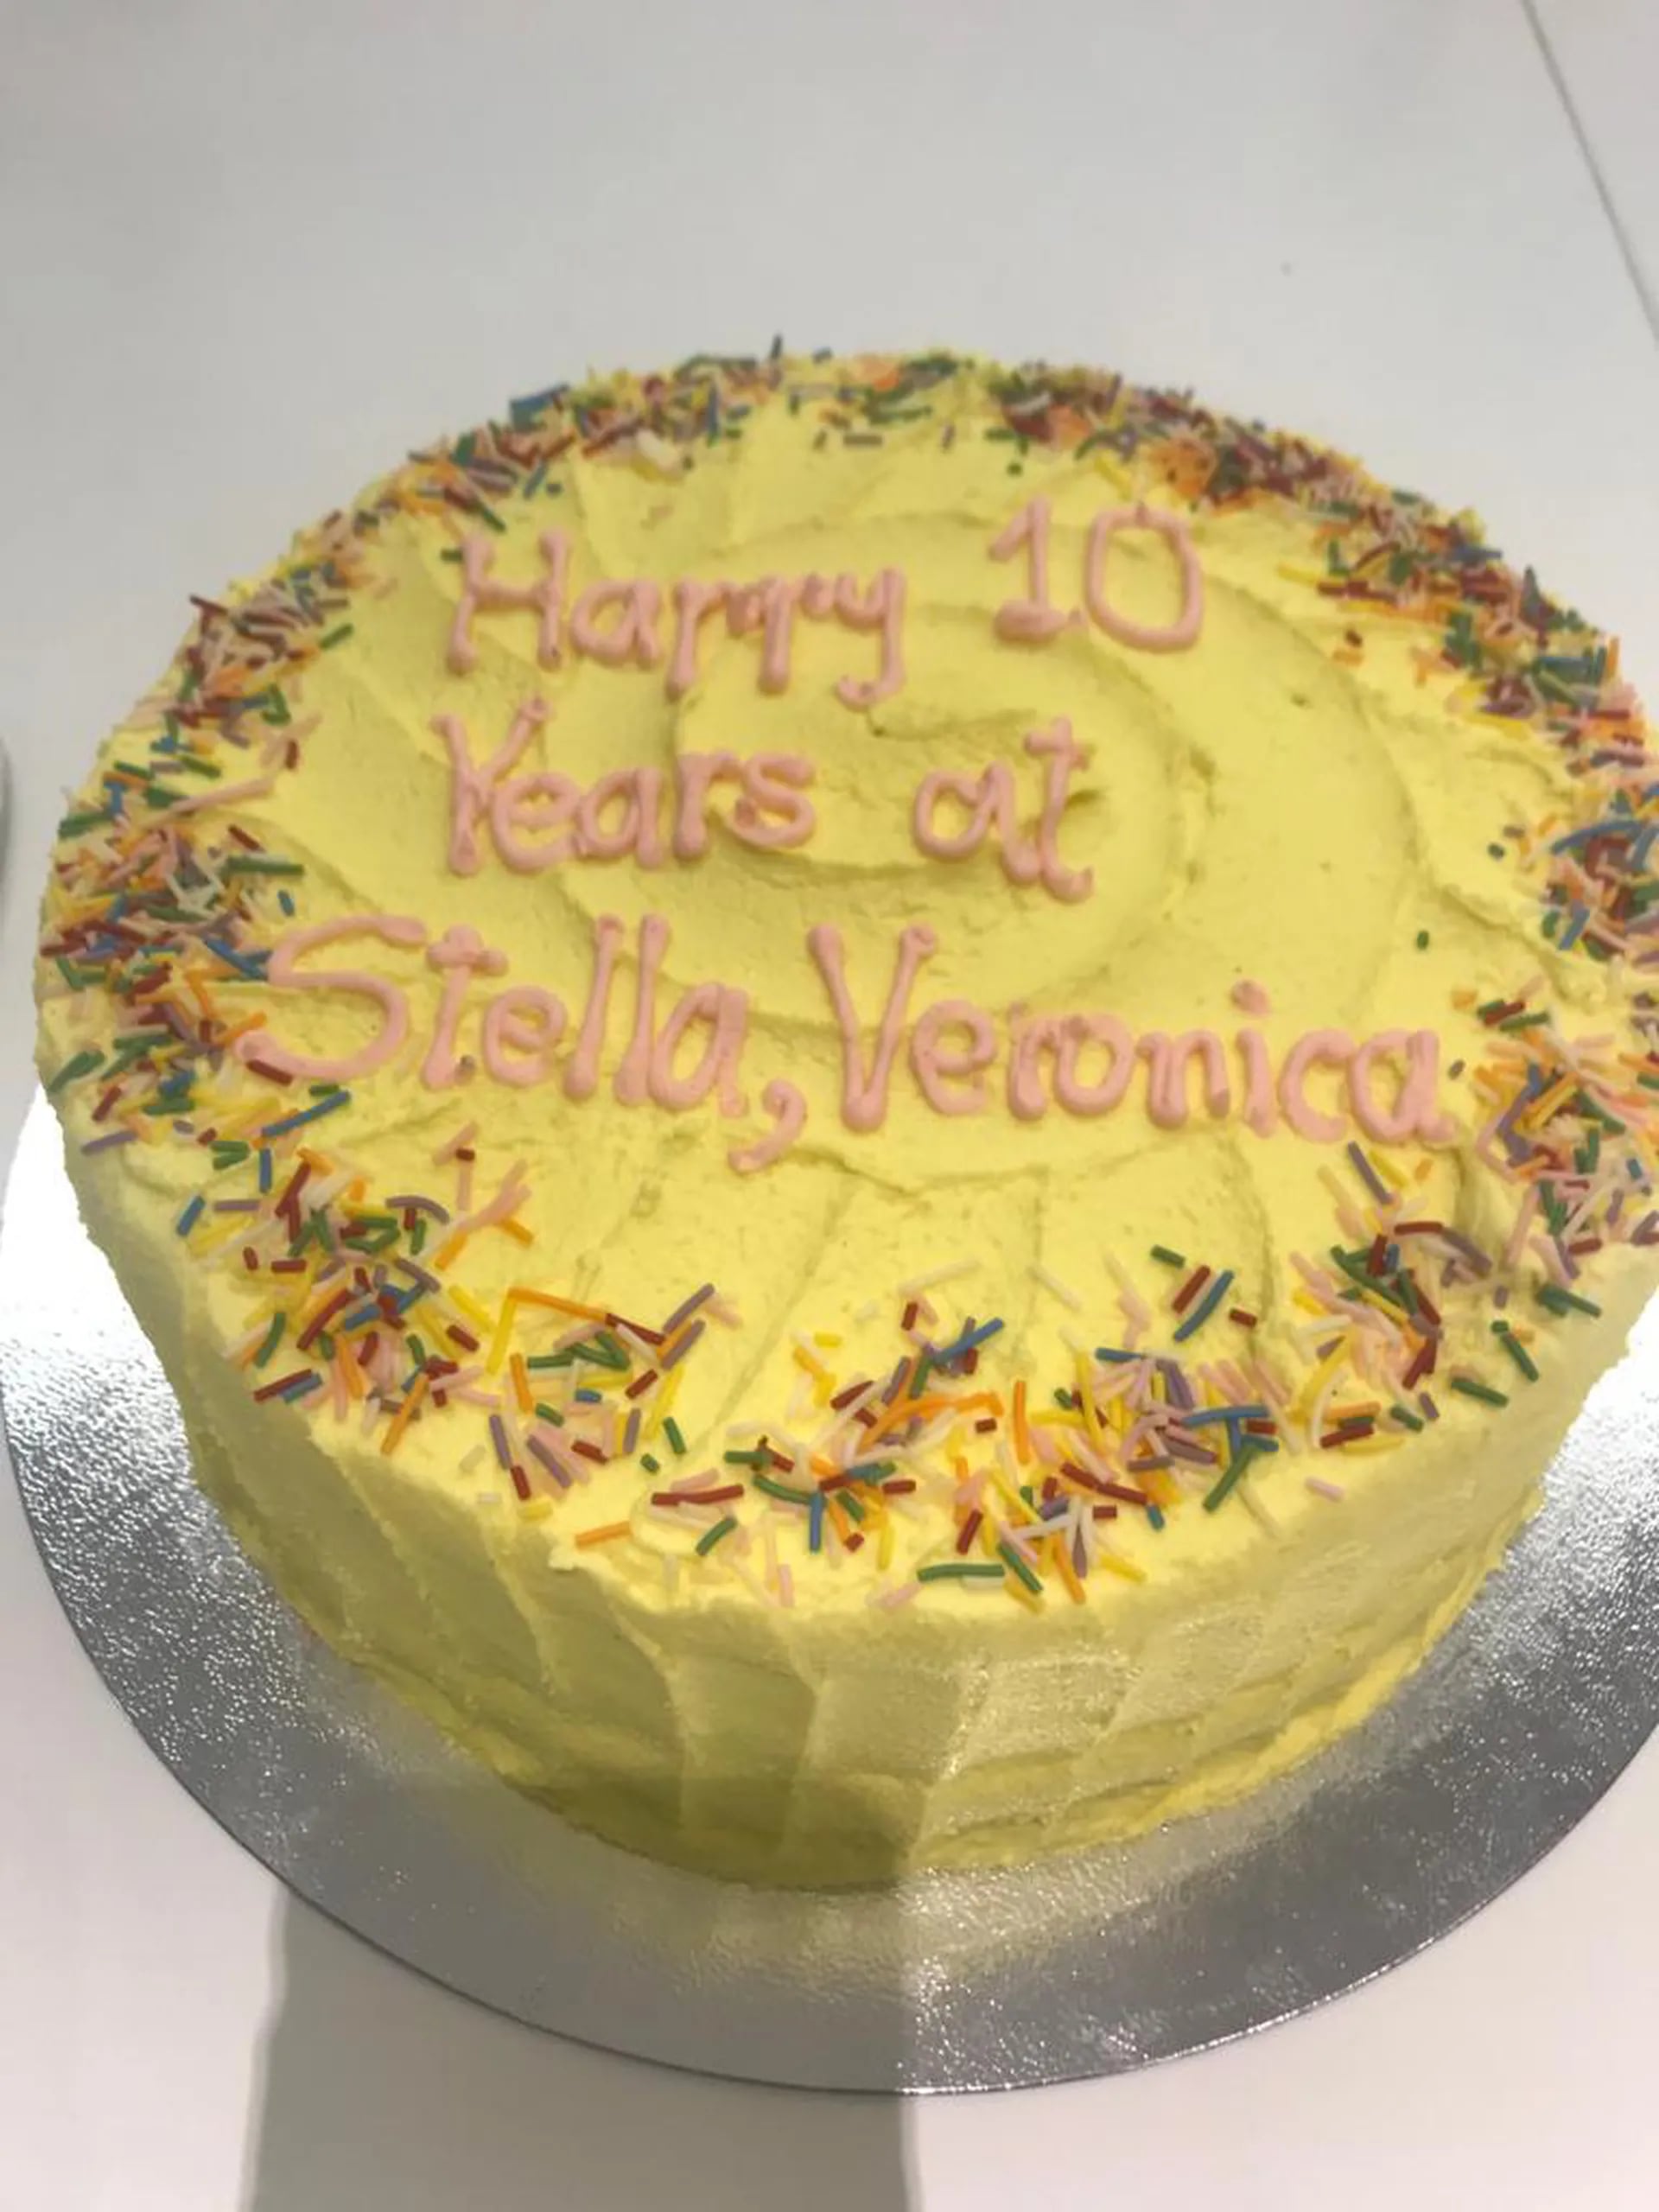 La torta con la que recibieron a Verónica Potocko en la oficina el día que cumplió diez años en Stella McCartney